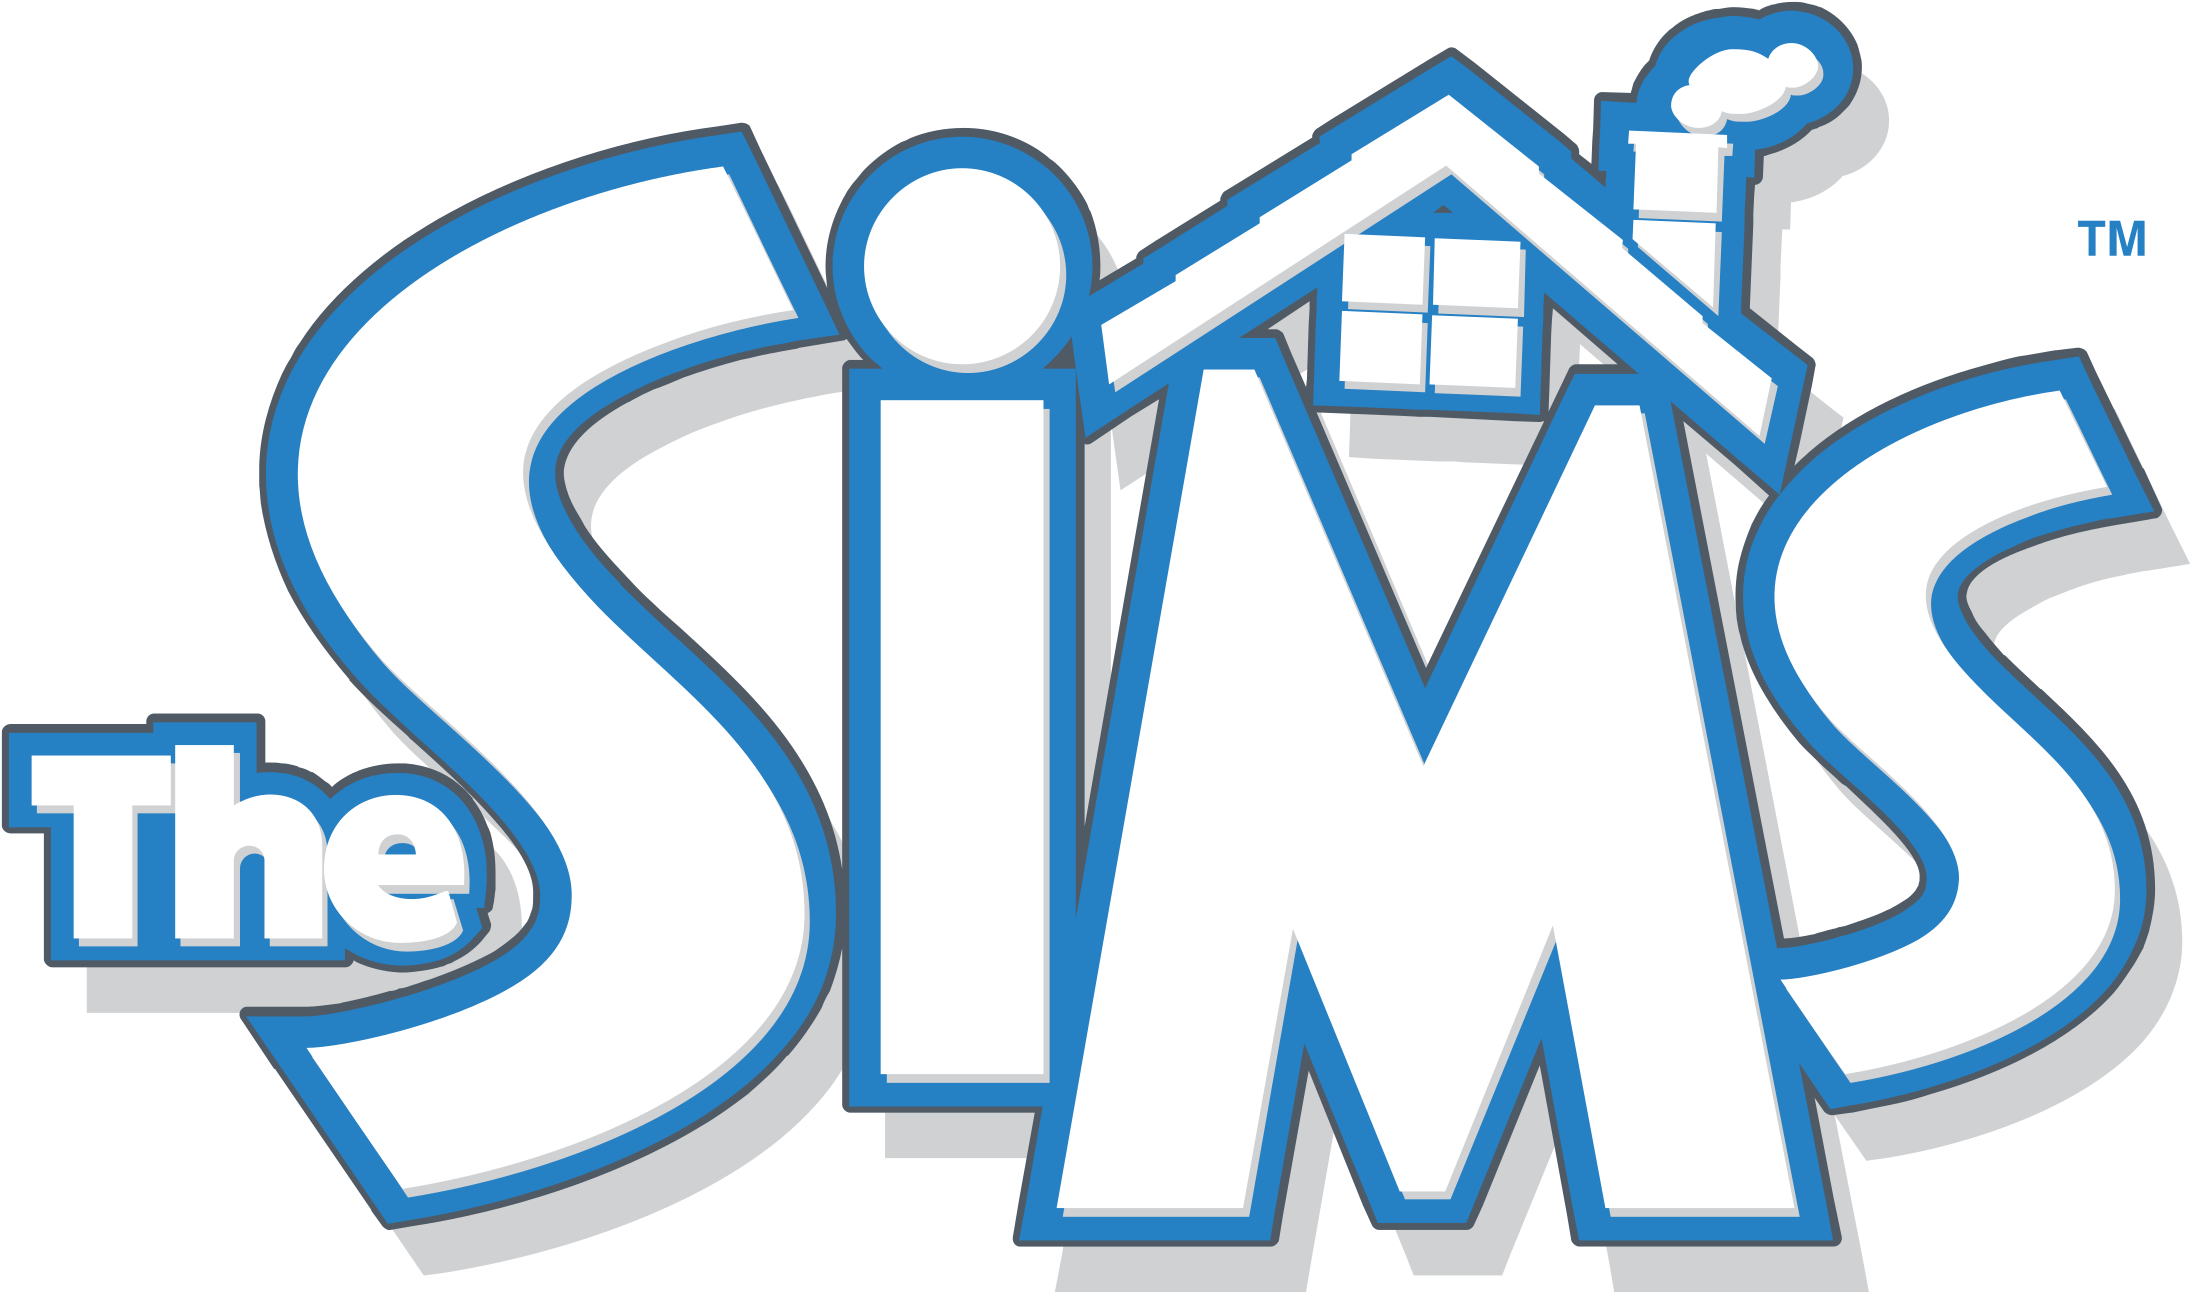 the sims 1 logo